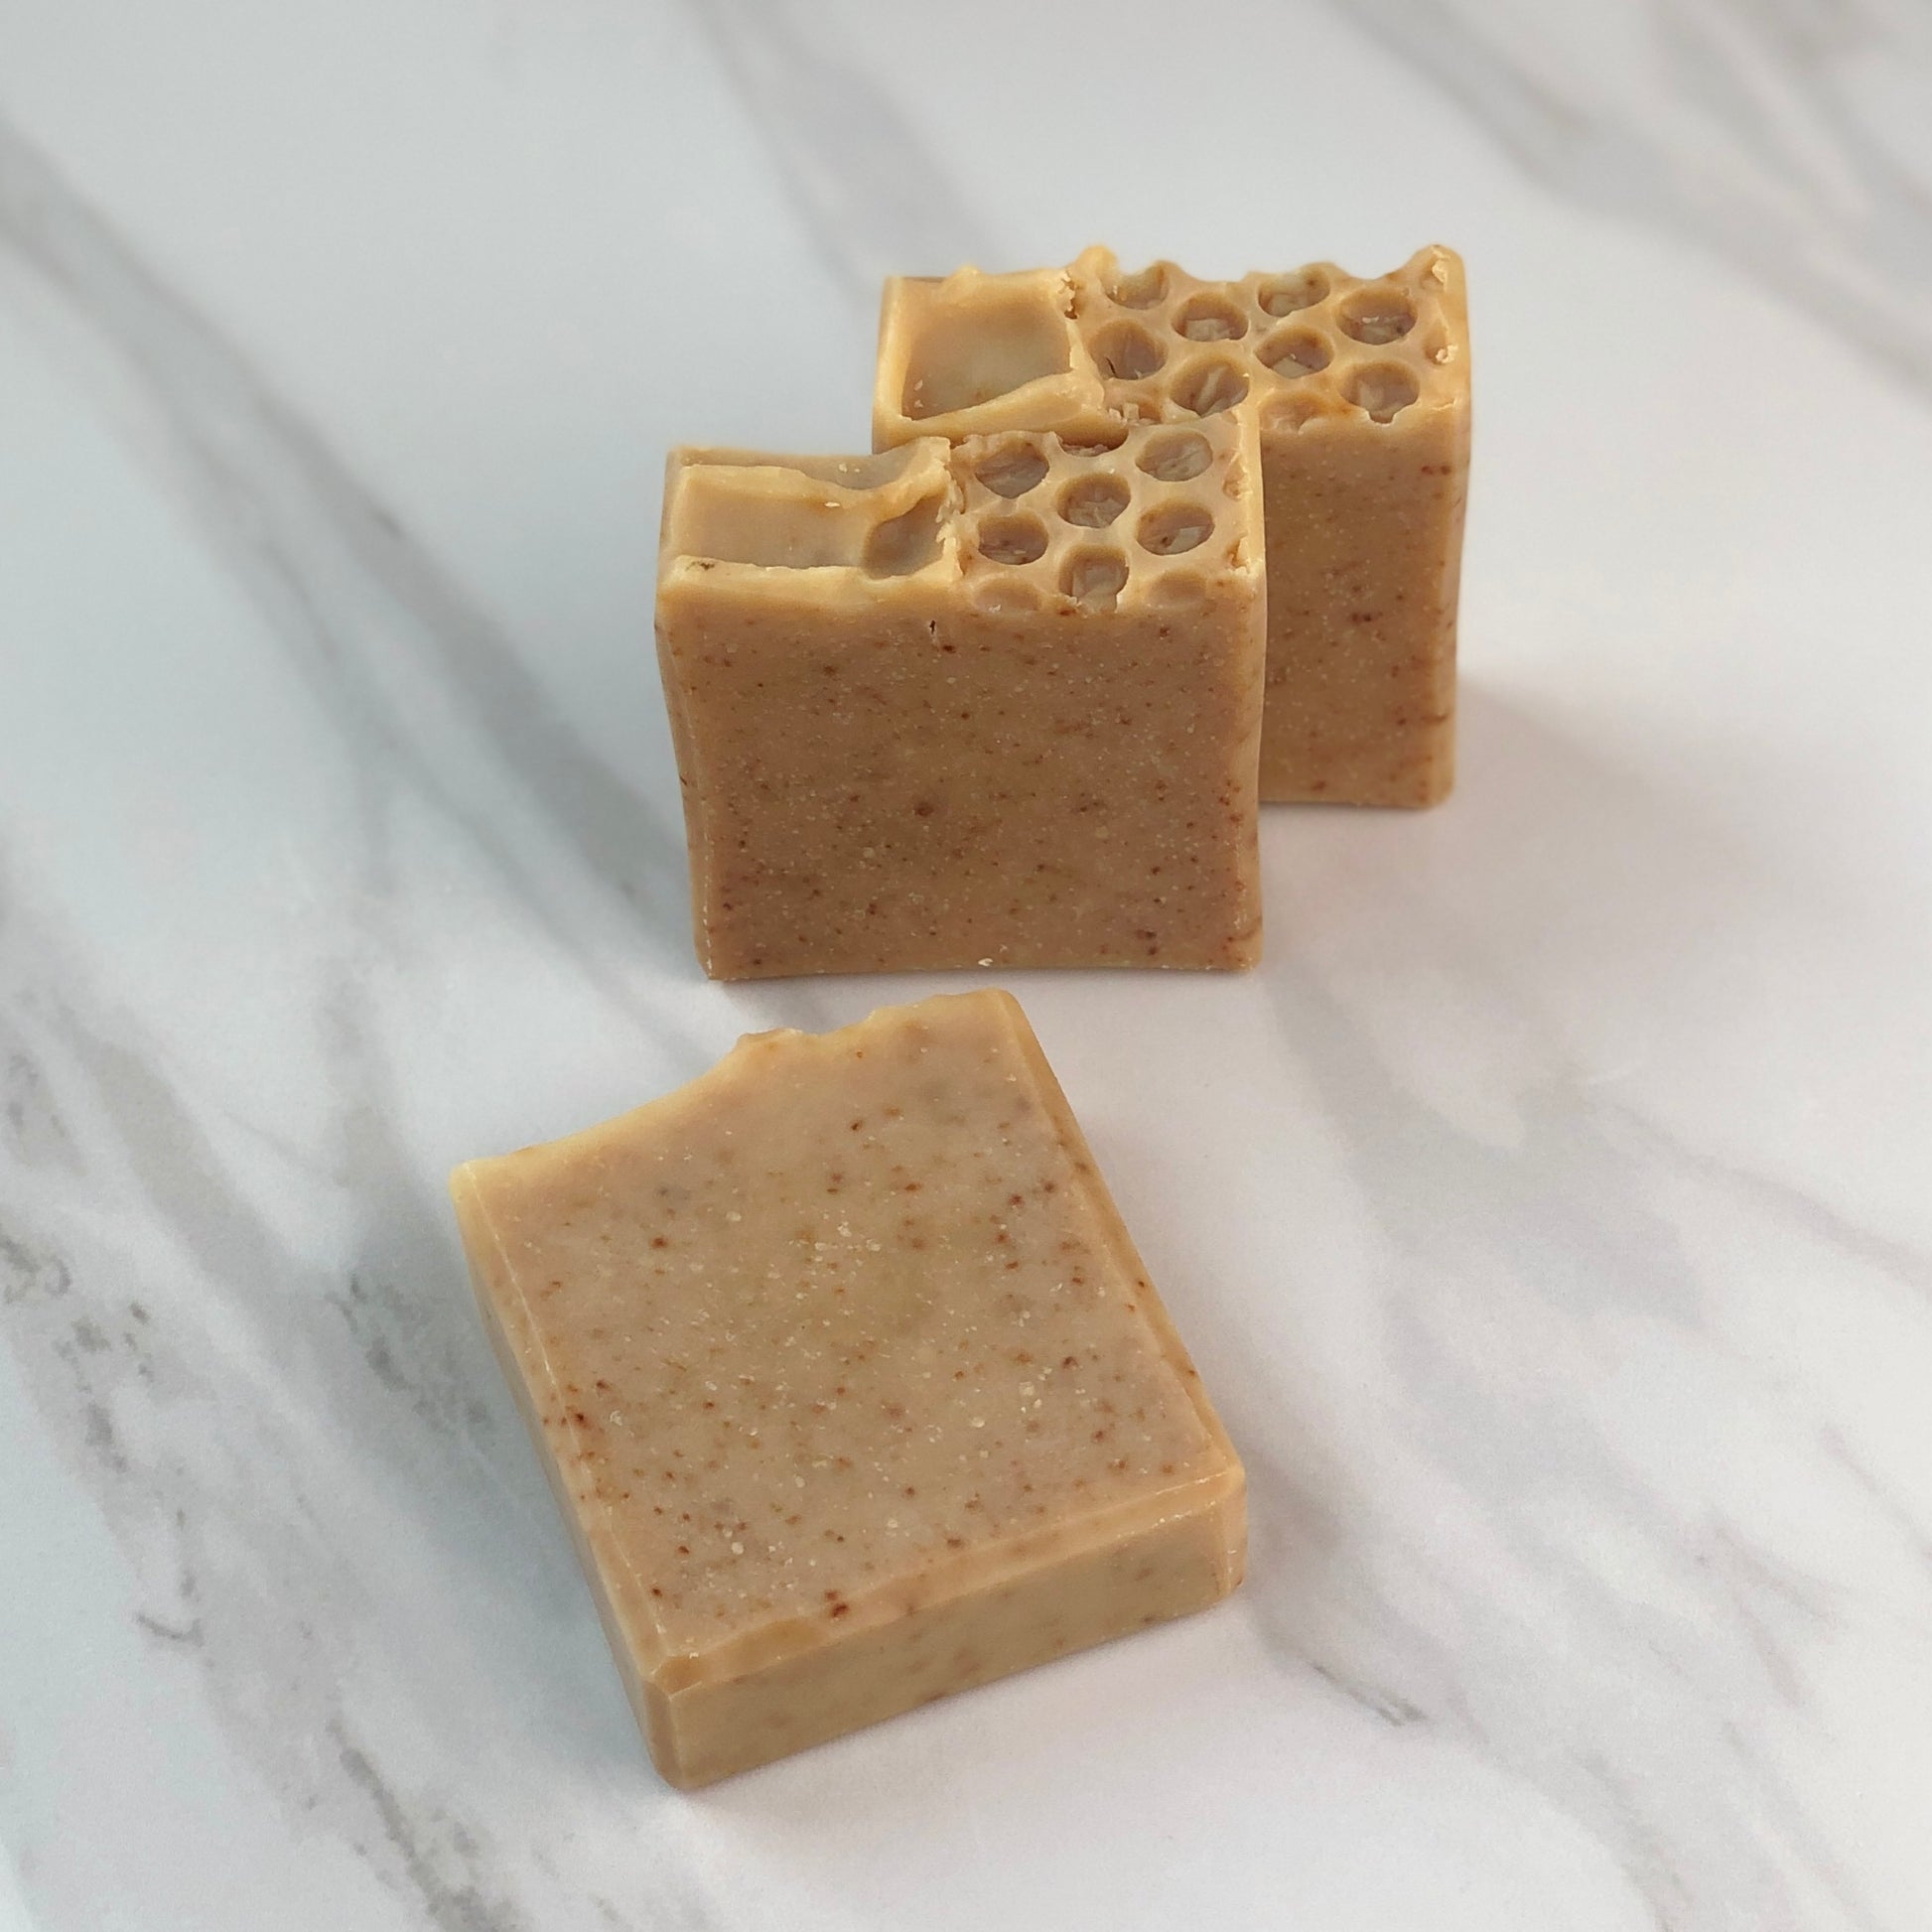 Moisturizing Oatmeal Honey Soap for Dry Skin - The Artisan Life